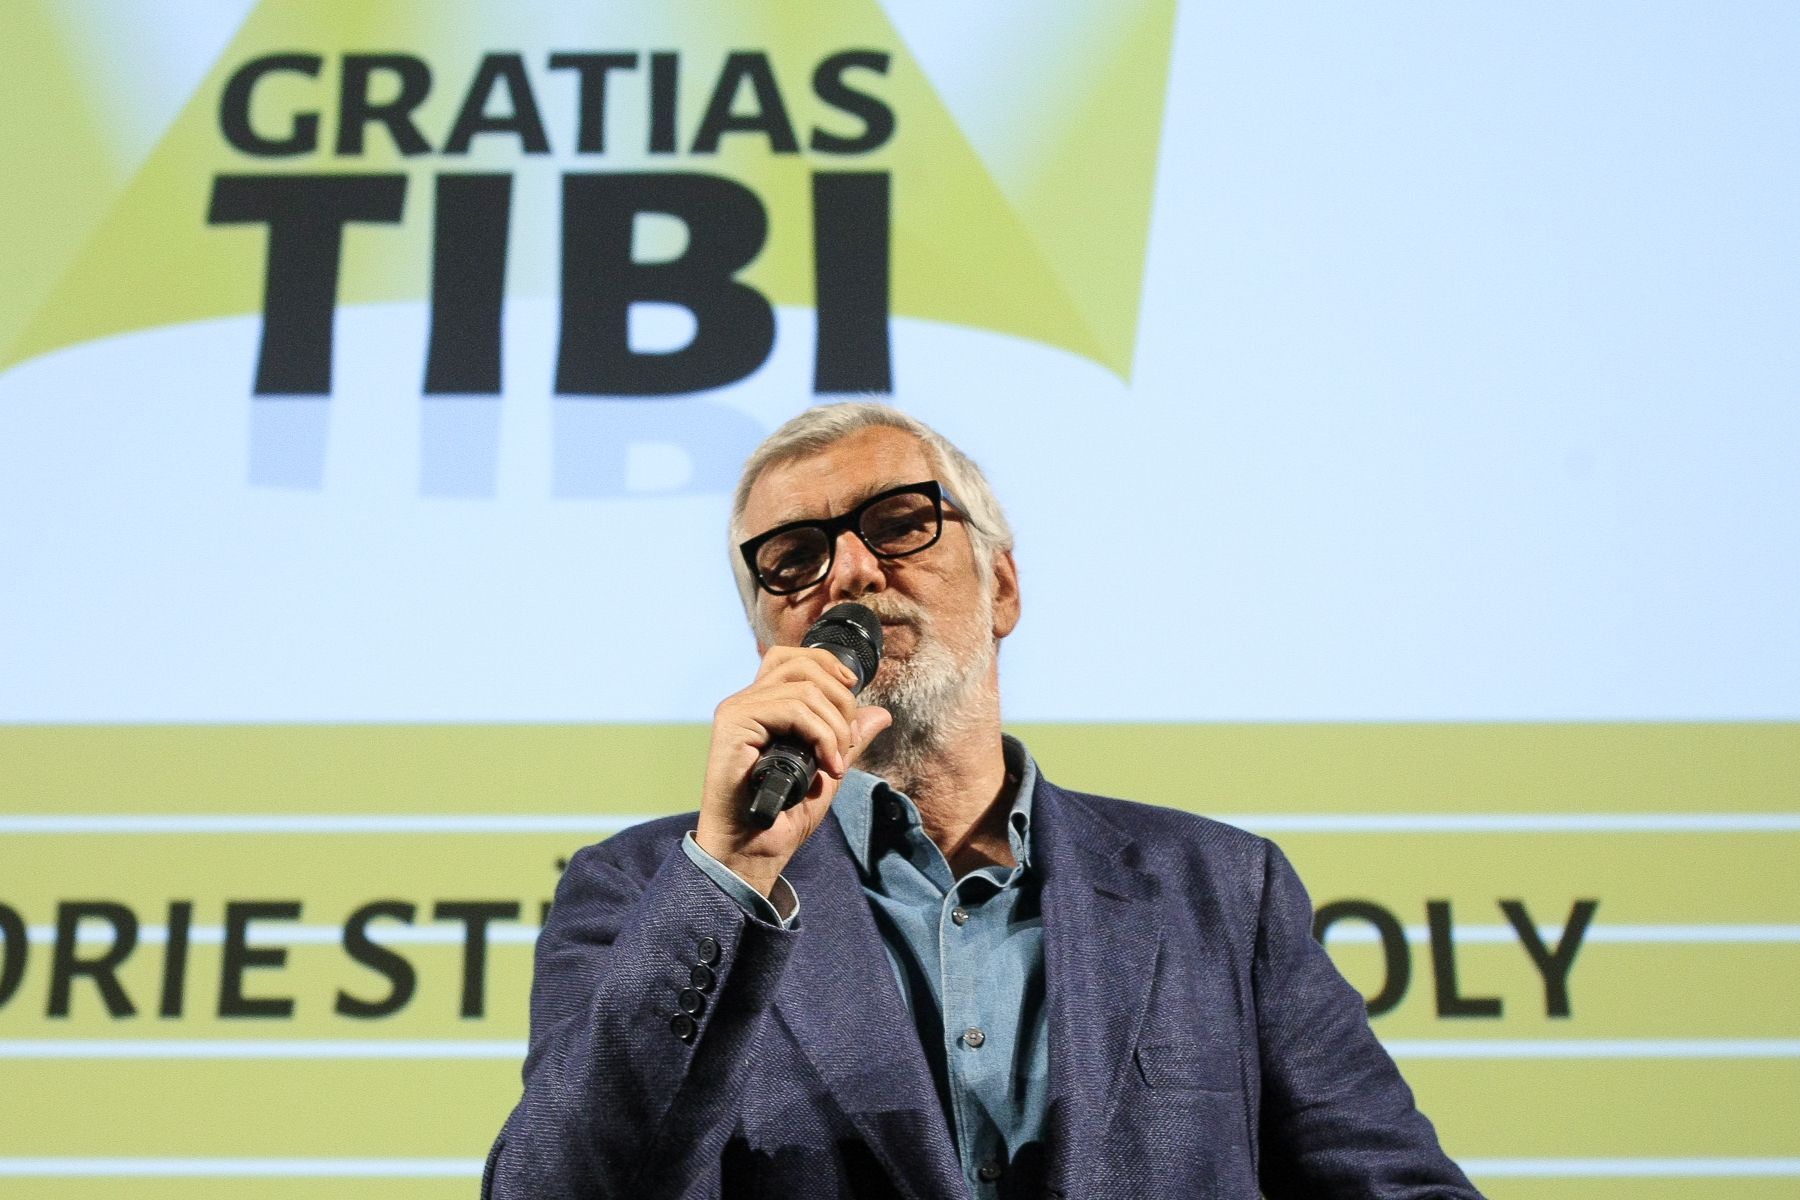 Vyhlášení cen Gratias Tibi 2015